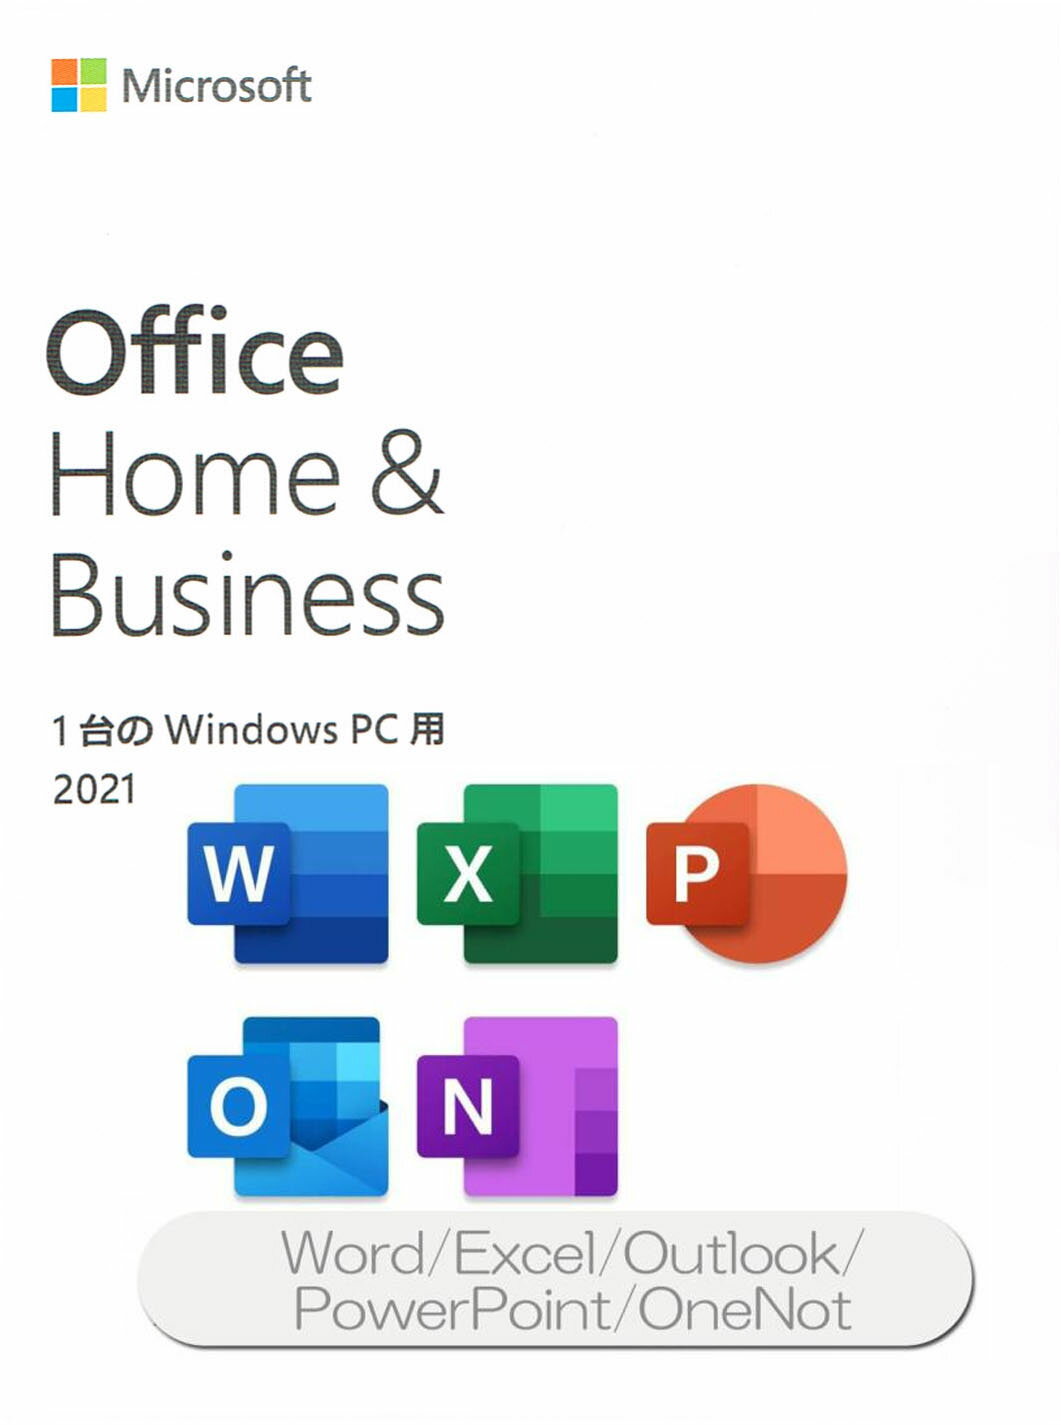 Microsoft正規ライセンス（PIPC版）OfficeHome&Business2021になります。 インストールディスクなどの付属はなく、予めOfficeプログラムがプリインストールされた状態でのご提供となりますので、 付属のライセンスカードを開封し、記載されたプロダクトキーを登録しご使用いただく形となります。 【商品内容】 OfficeHome&Business2021シリアルカード（内部にプロダクトキーが記載されております） 含まれるアプリケーション ・Word ・Excel ・Outlook ・PowerPoint ・OneNote ※本商品の単体購入不可（本体と同時にお手続きください） 単体での注文は予告なくキャンセルとさせていただきます。 ※セットアップ時、要インターネット環境とマイクロソフトアカウントの作成 ※使用可能台数は同時購入パソコン1台のみ ※開封後のソフトウェアはキャンセル不可